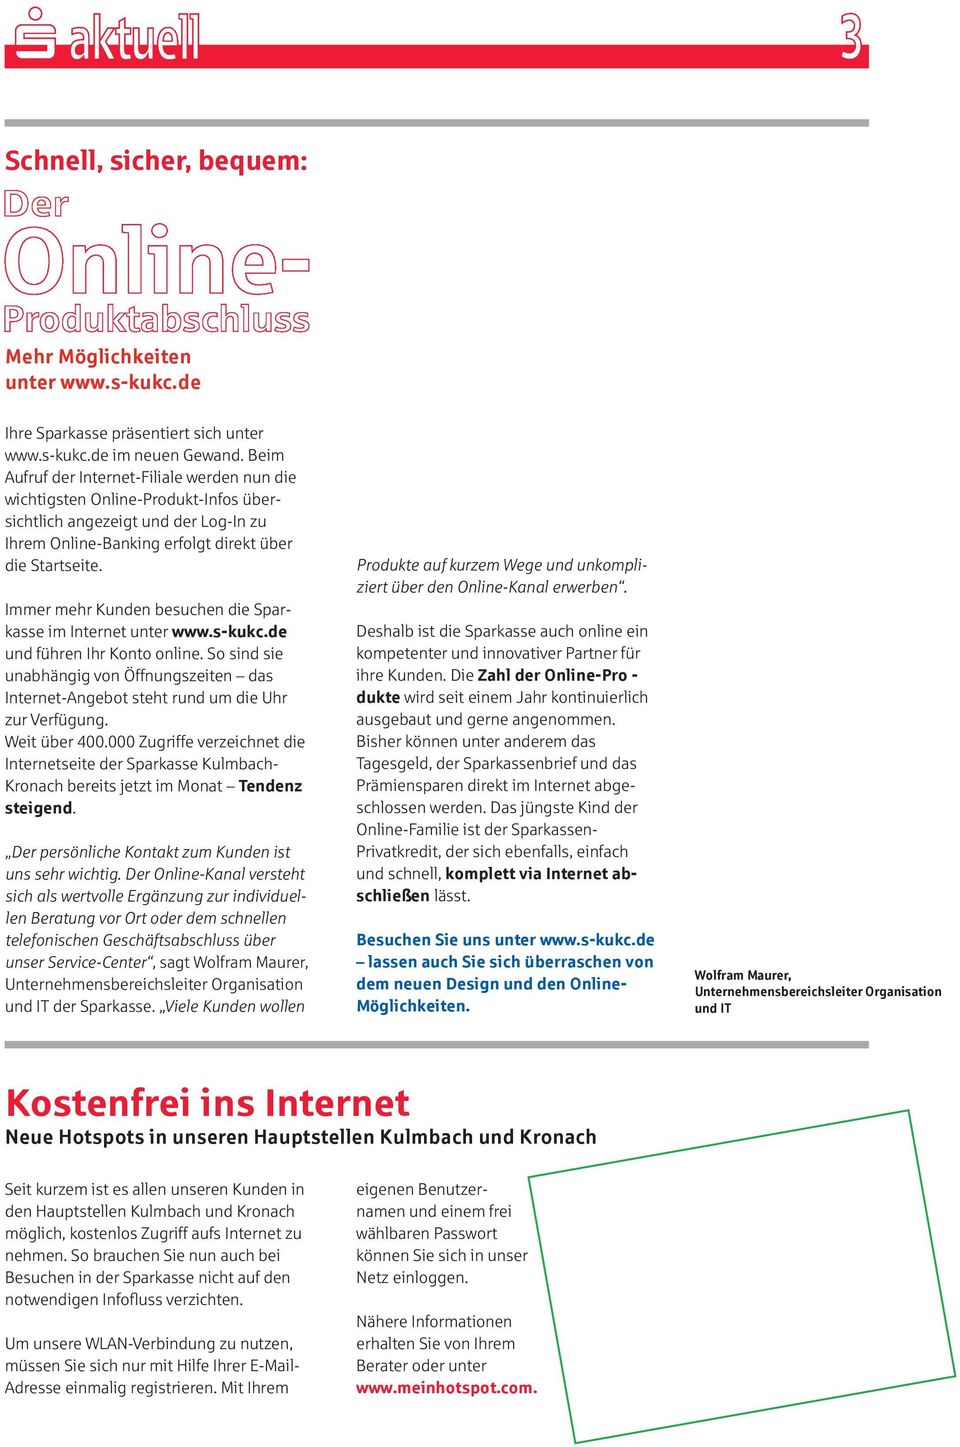 Immer mehr Kunden besuchen die Spar - kasse im Internet unter www.s-kukc.de und führen Ihr Konto online.